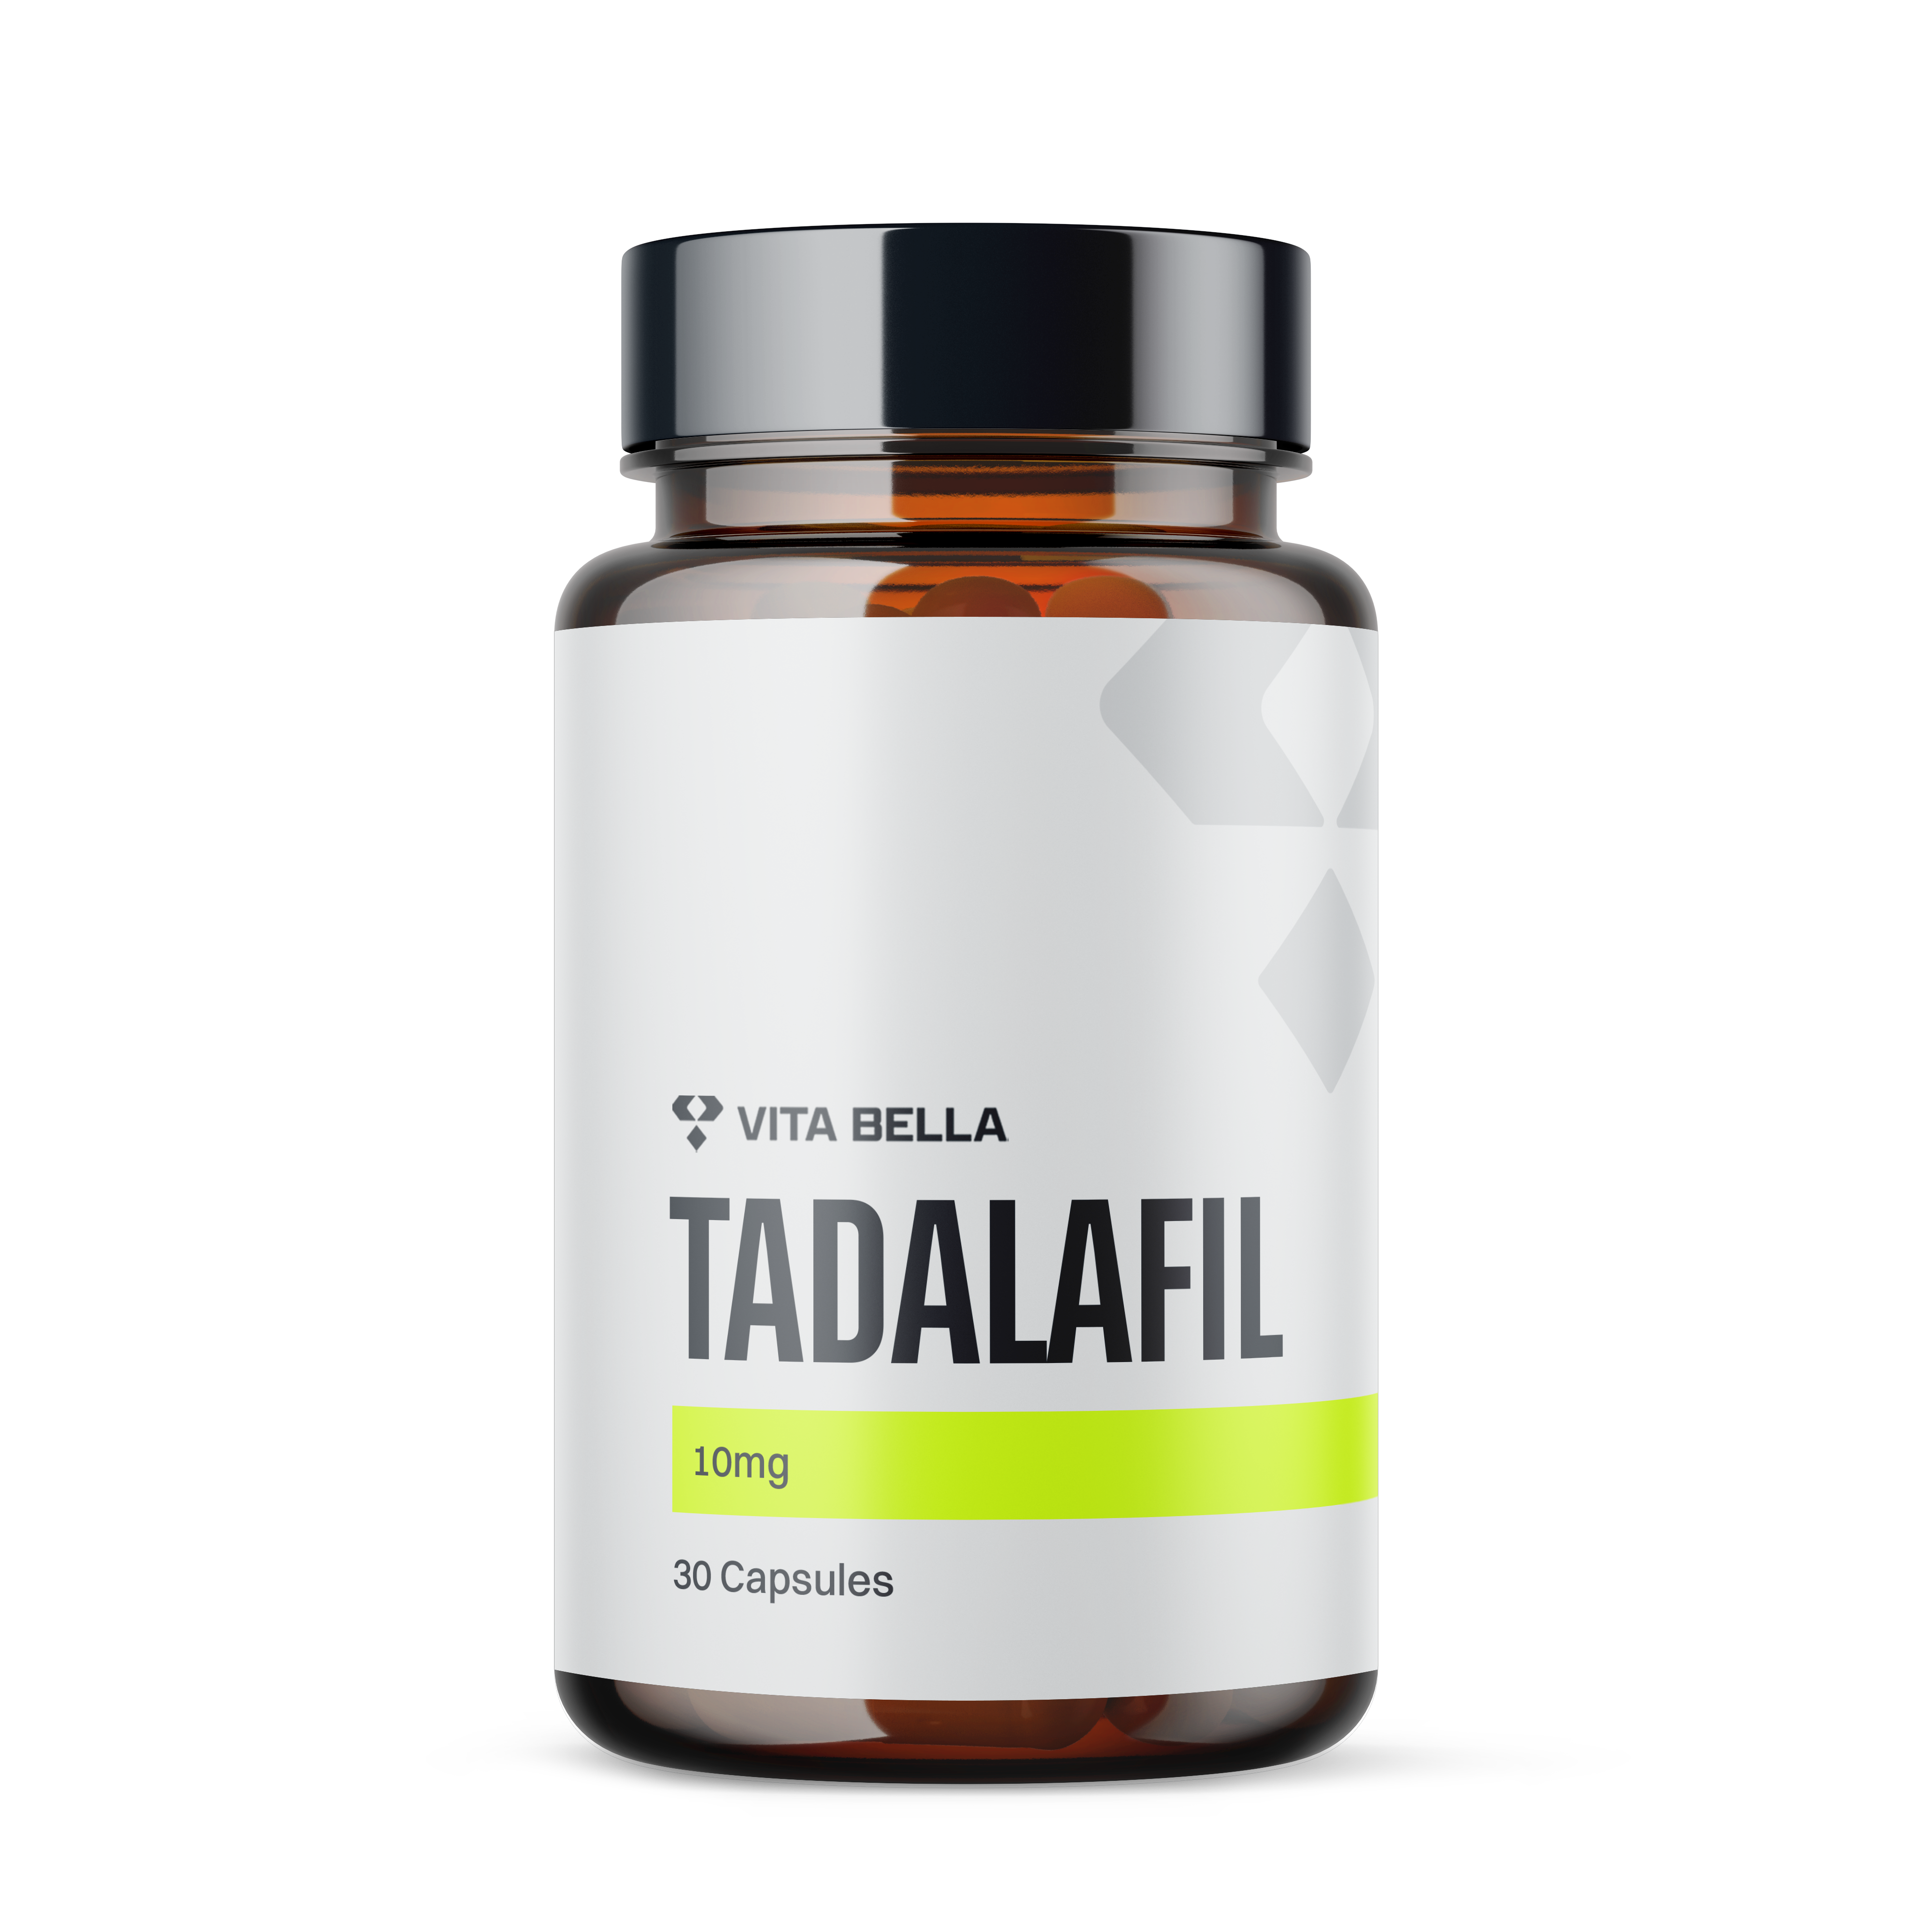 Tadalafil capsules